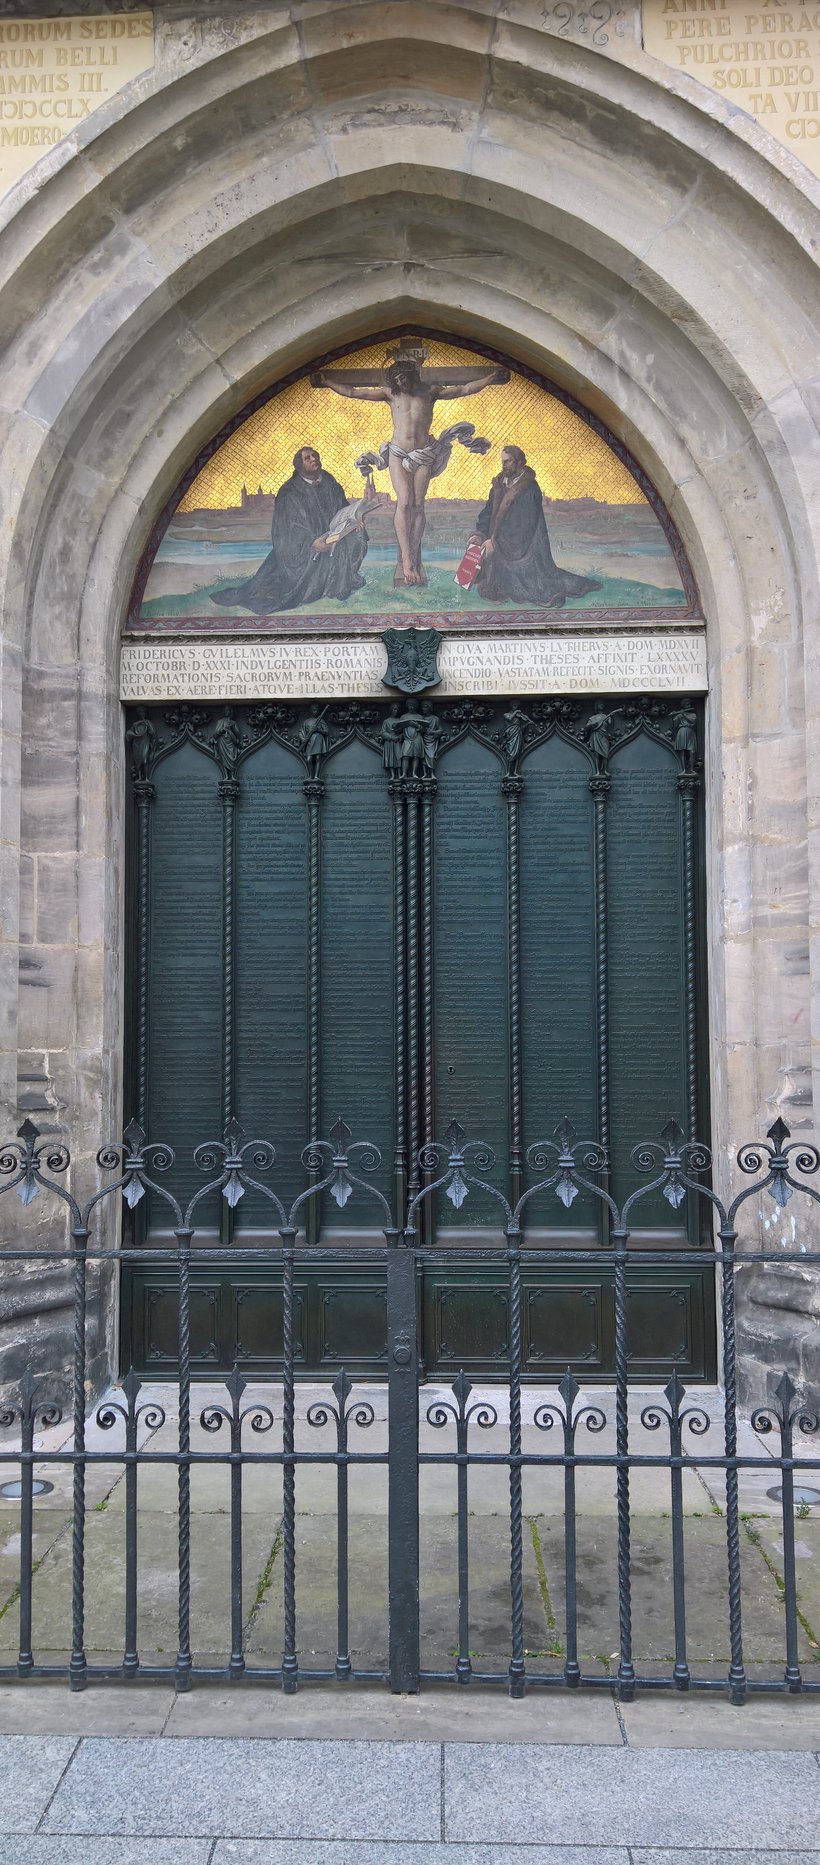 A Wittenbergin linnankirkon ovi_XL.jpg